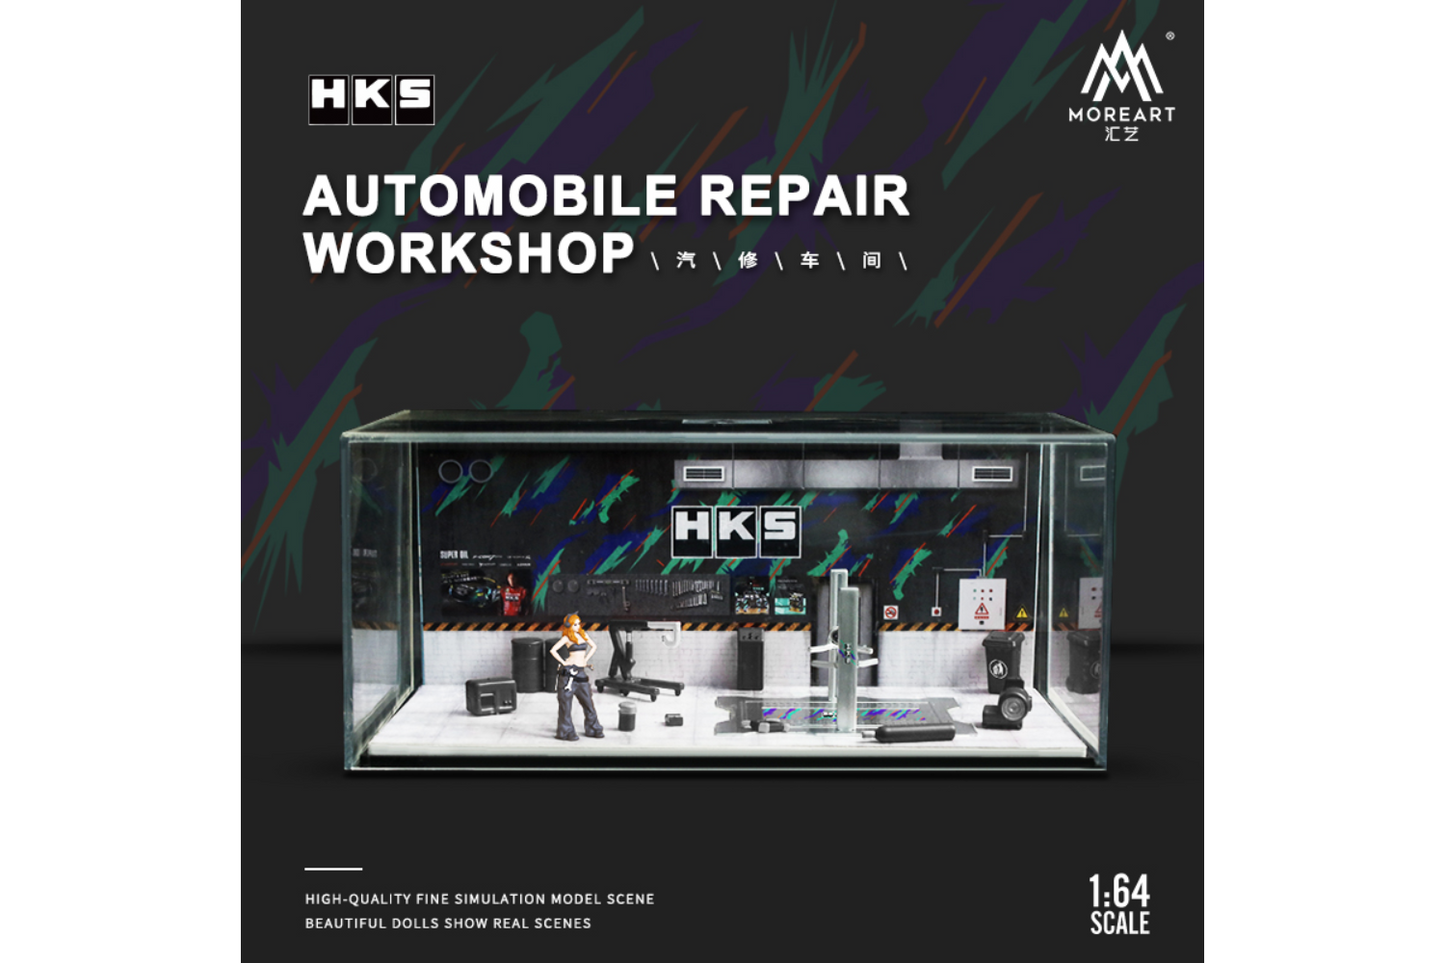 More Art 1/64 HKS Automobile Repair Workshop